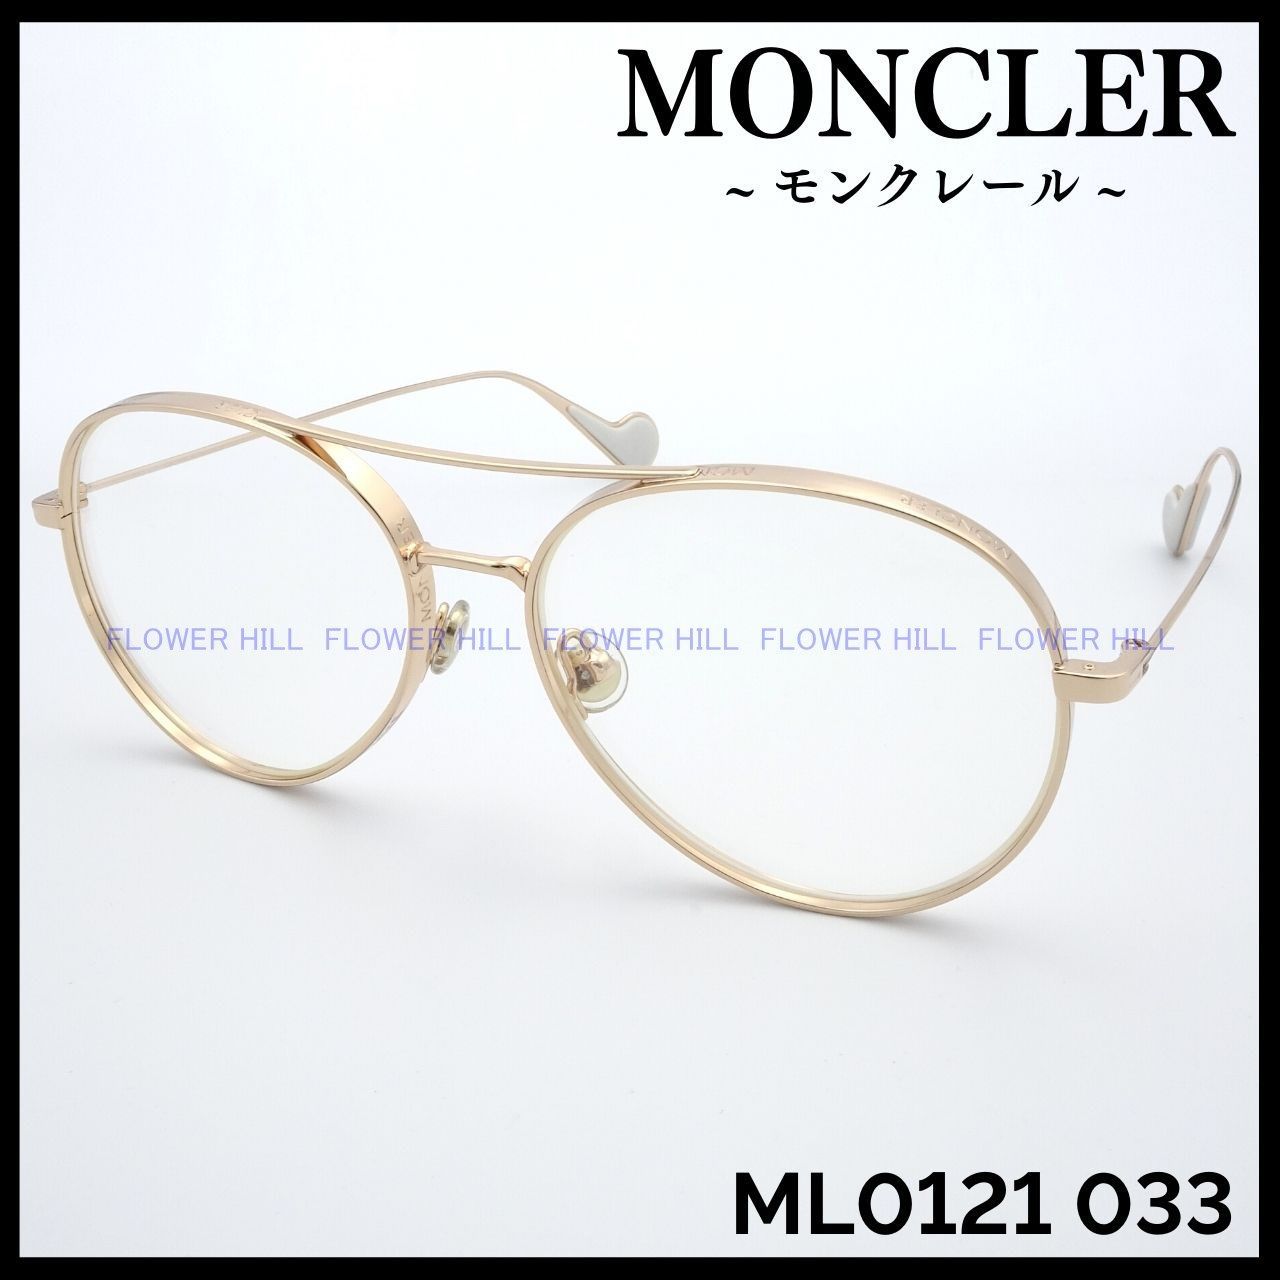 モンクレール MONCLER メガネ フレーム ML0121 033 ゴールド ティア